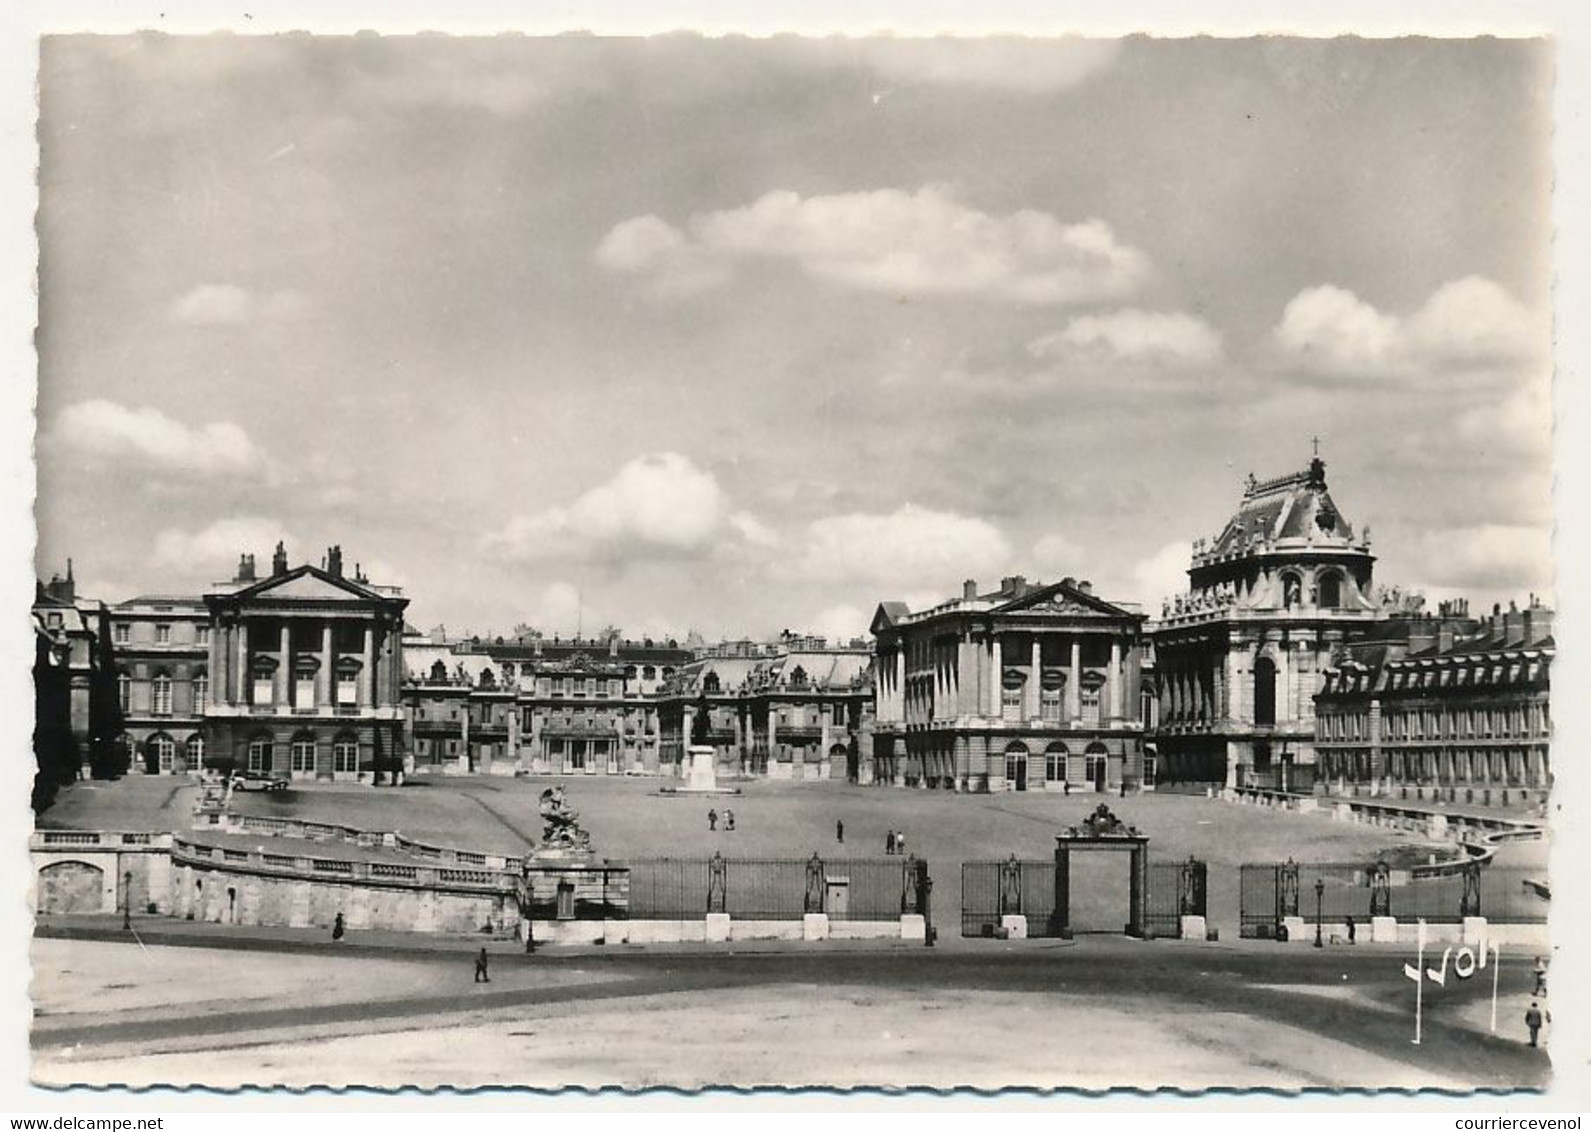 FRANCE - CPM Affr 1,00 Amboise, Cad "Congrès Du Parlement Versailles" 21/10/1974 + Questeurs / Façade Du Palais - Matasellos Conmemorativos